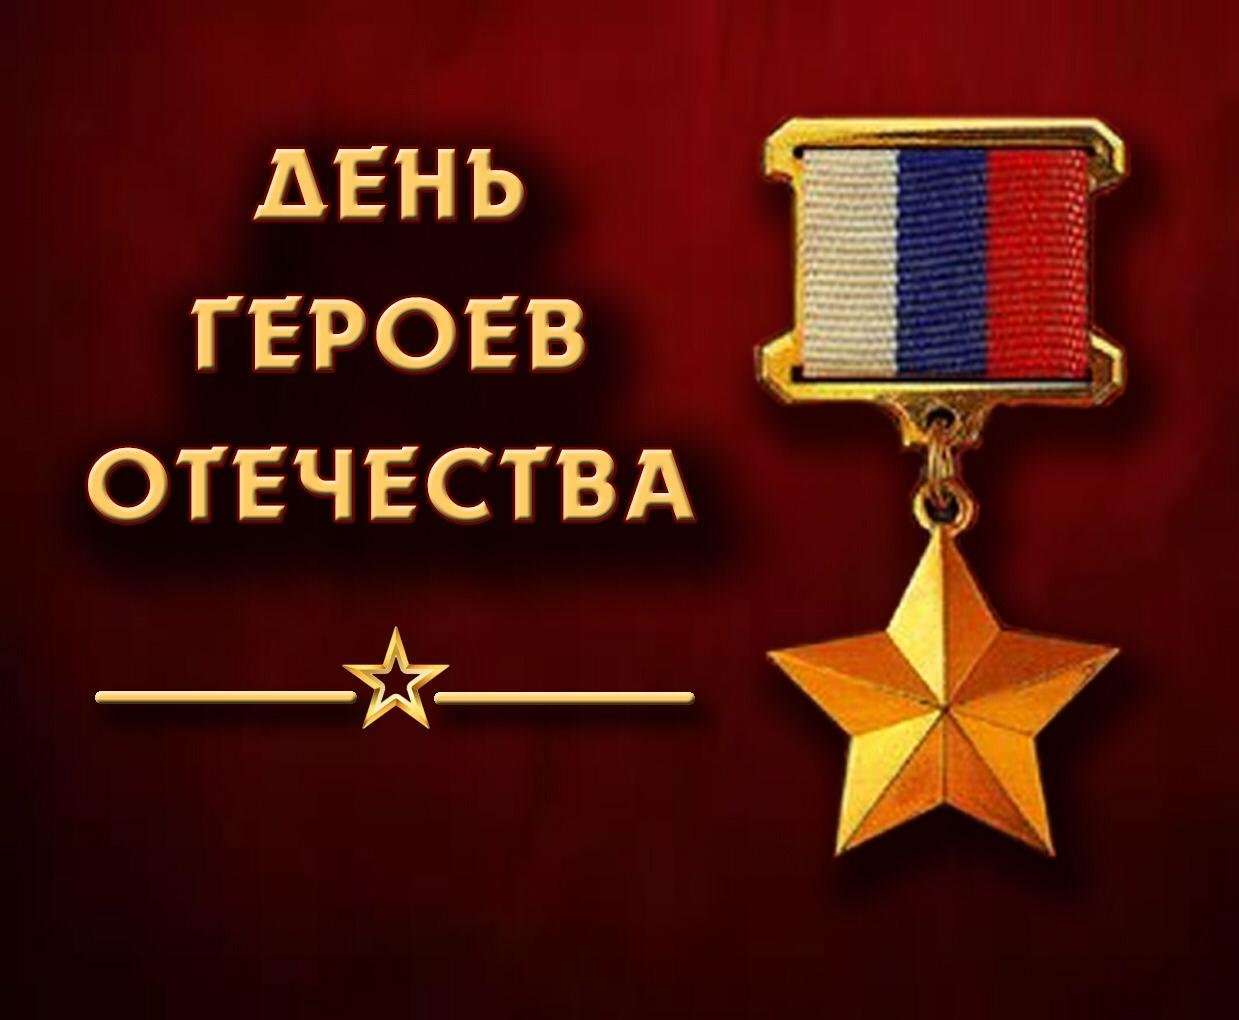 9 декабря день героев отечества